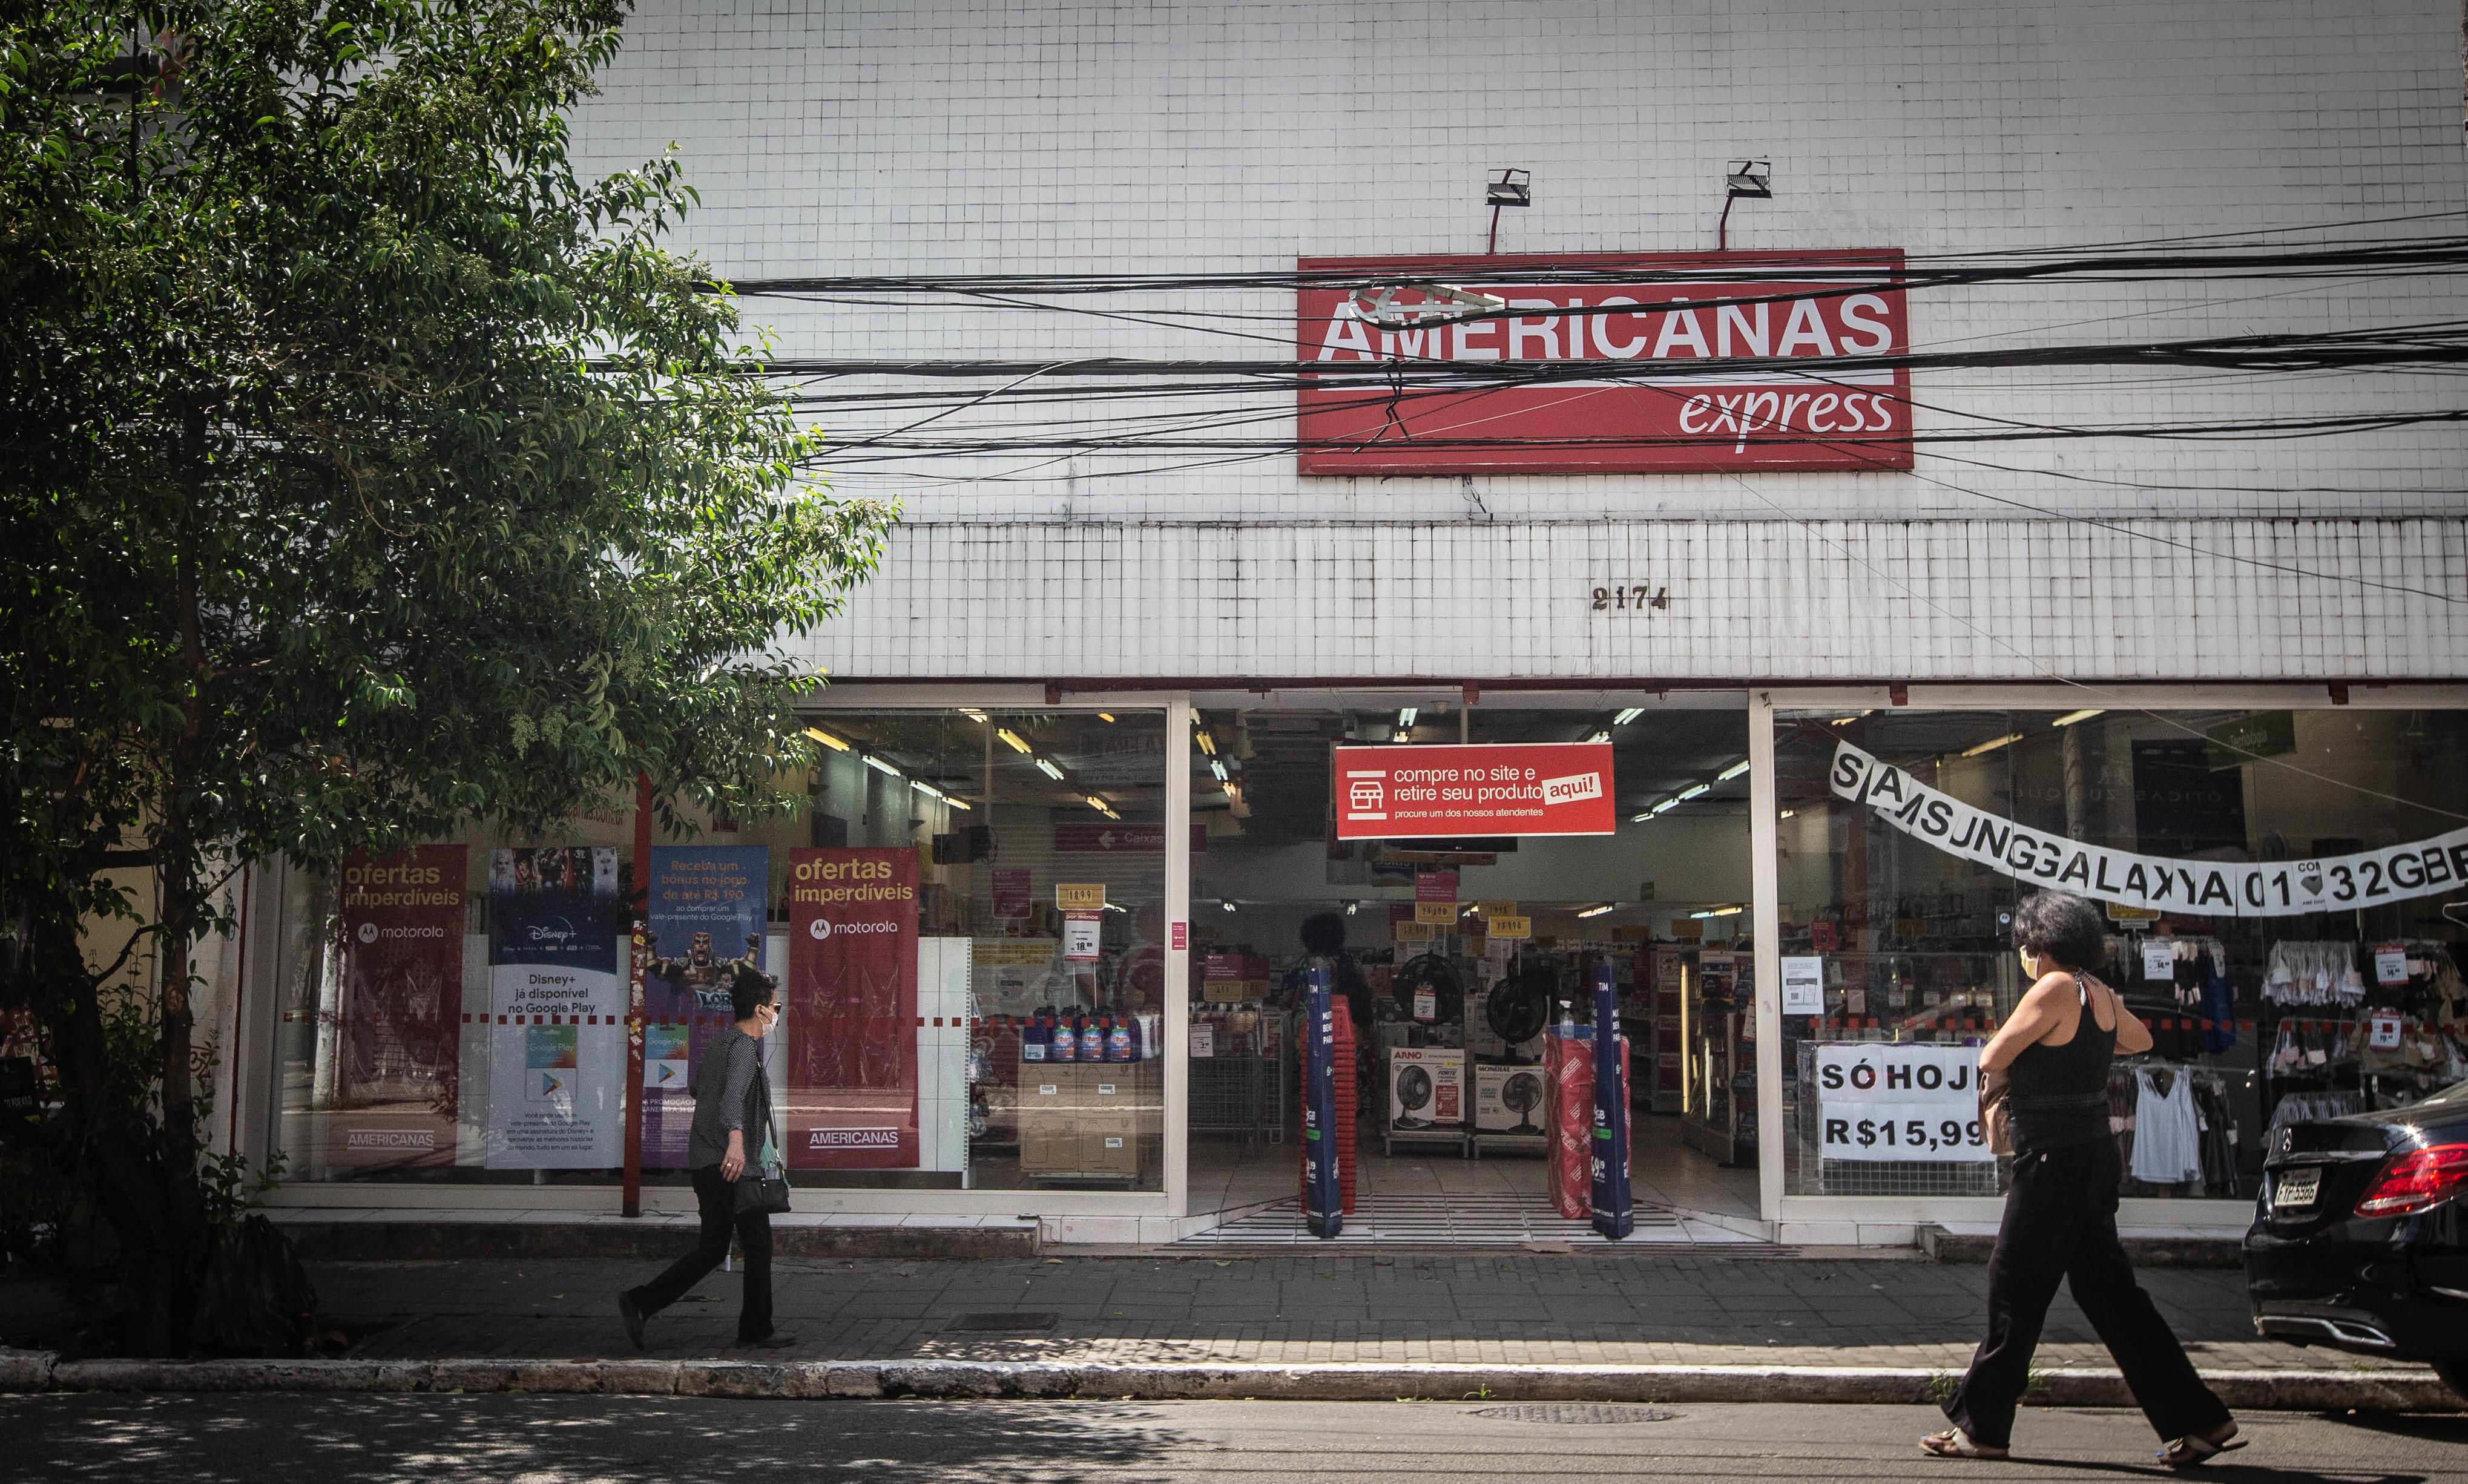 Americanas demite 7 funcionários de unidades ainda ativas na Capital -  Economia - Campo Grande News